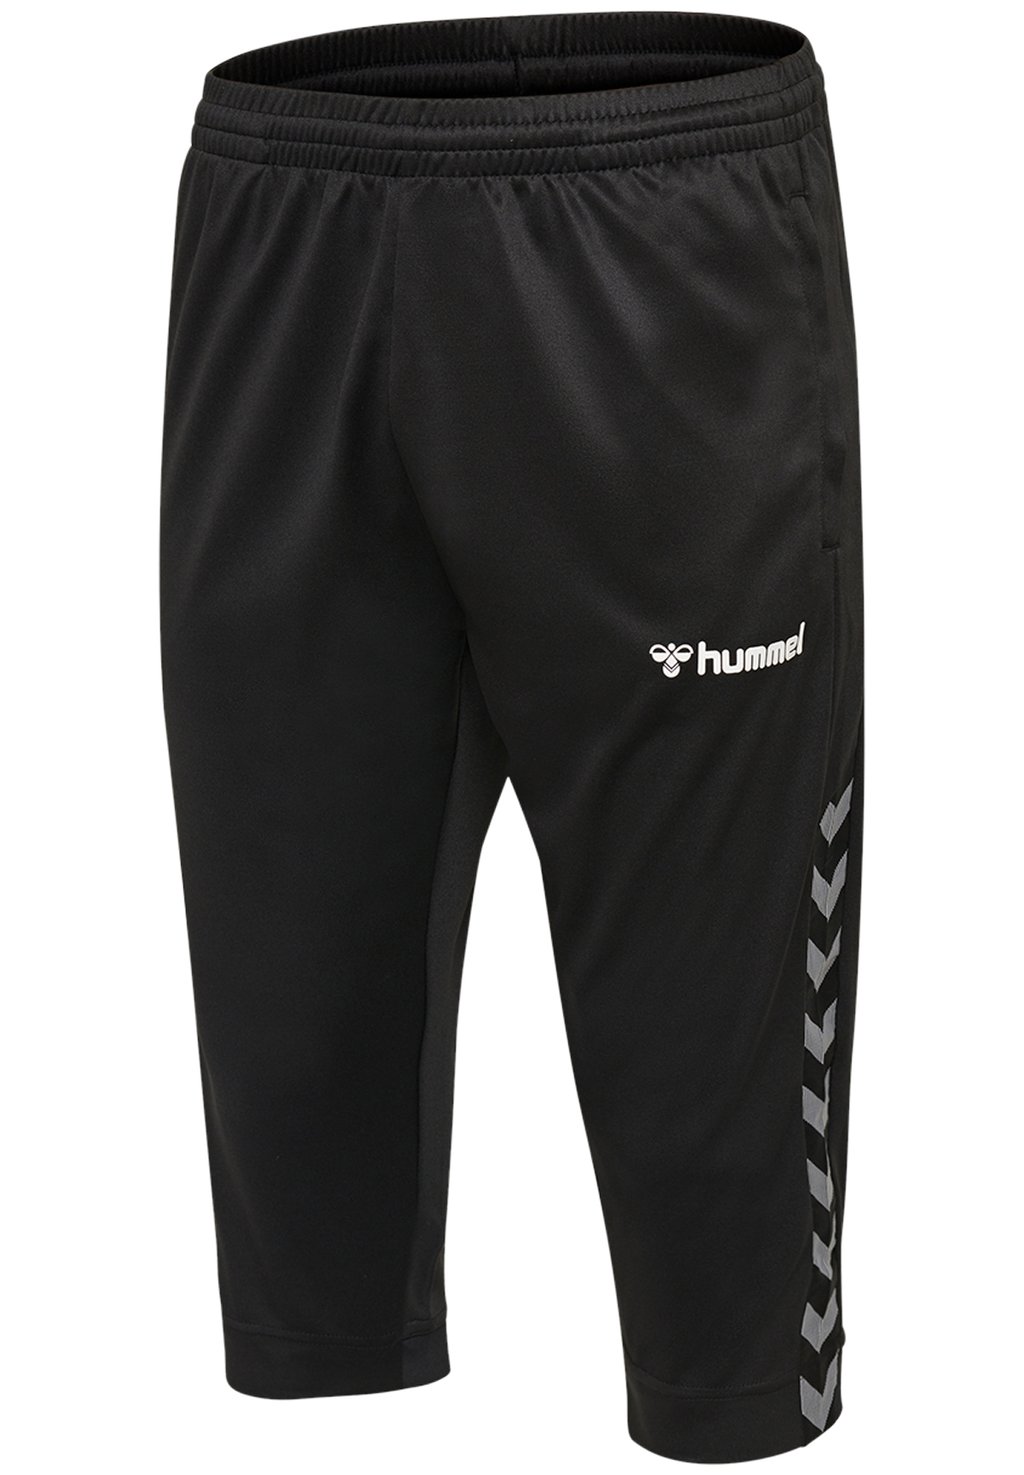 Спортивные брюки Authentic Hummel, цвет black/white спортивные брюки 3 4 authentic hummel цвет black